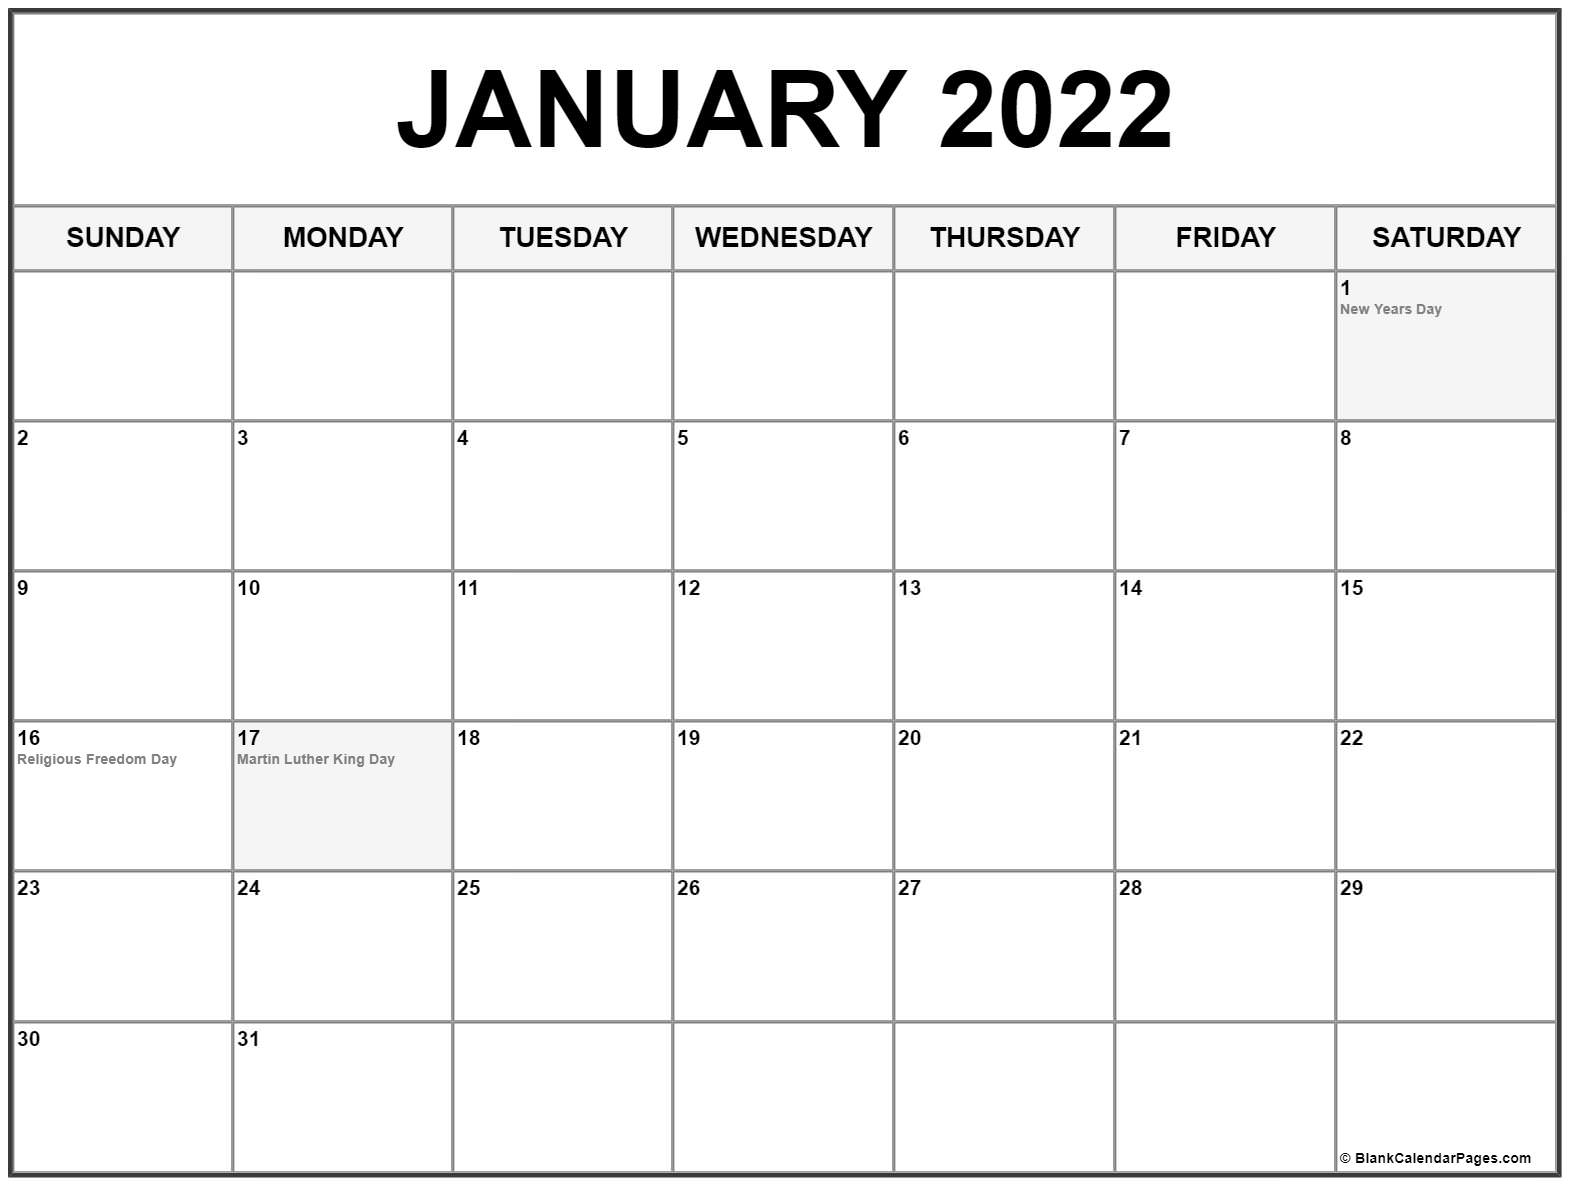 2022 Calendar Same As What Year - Nexta